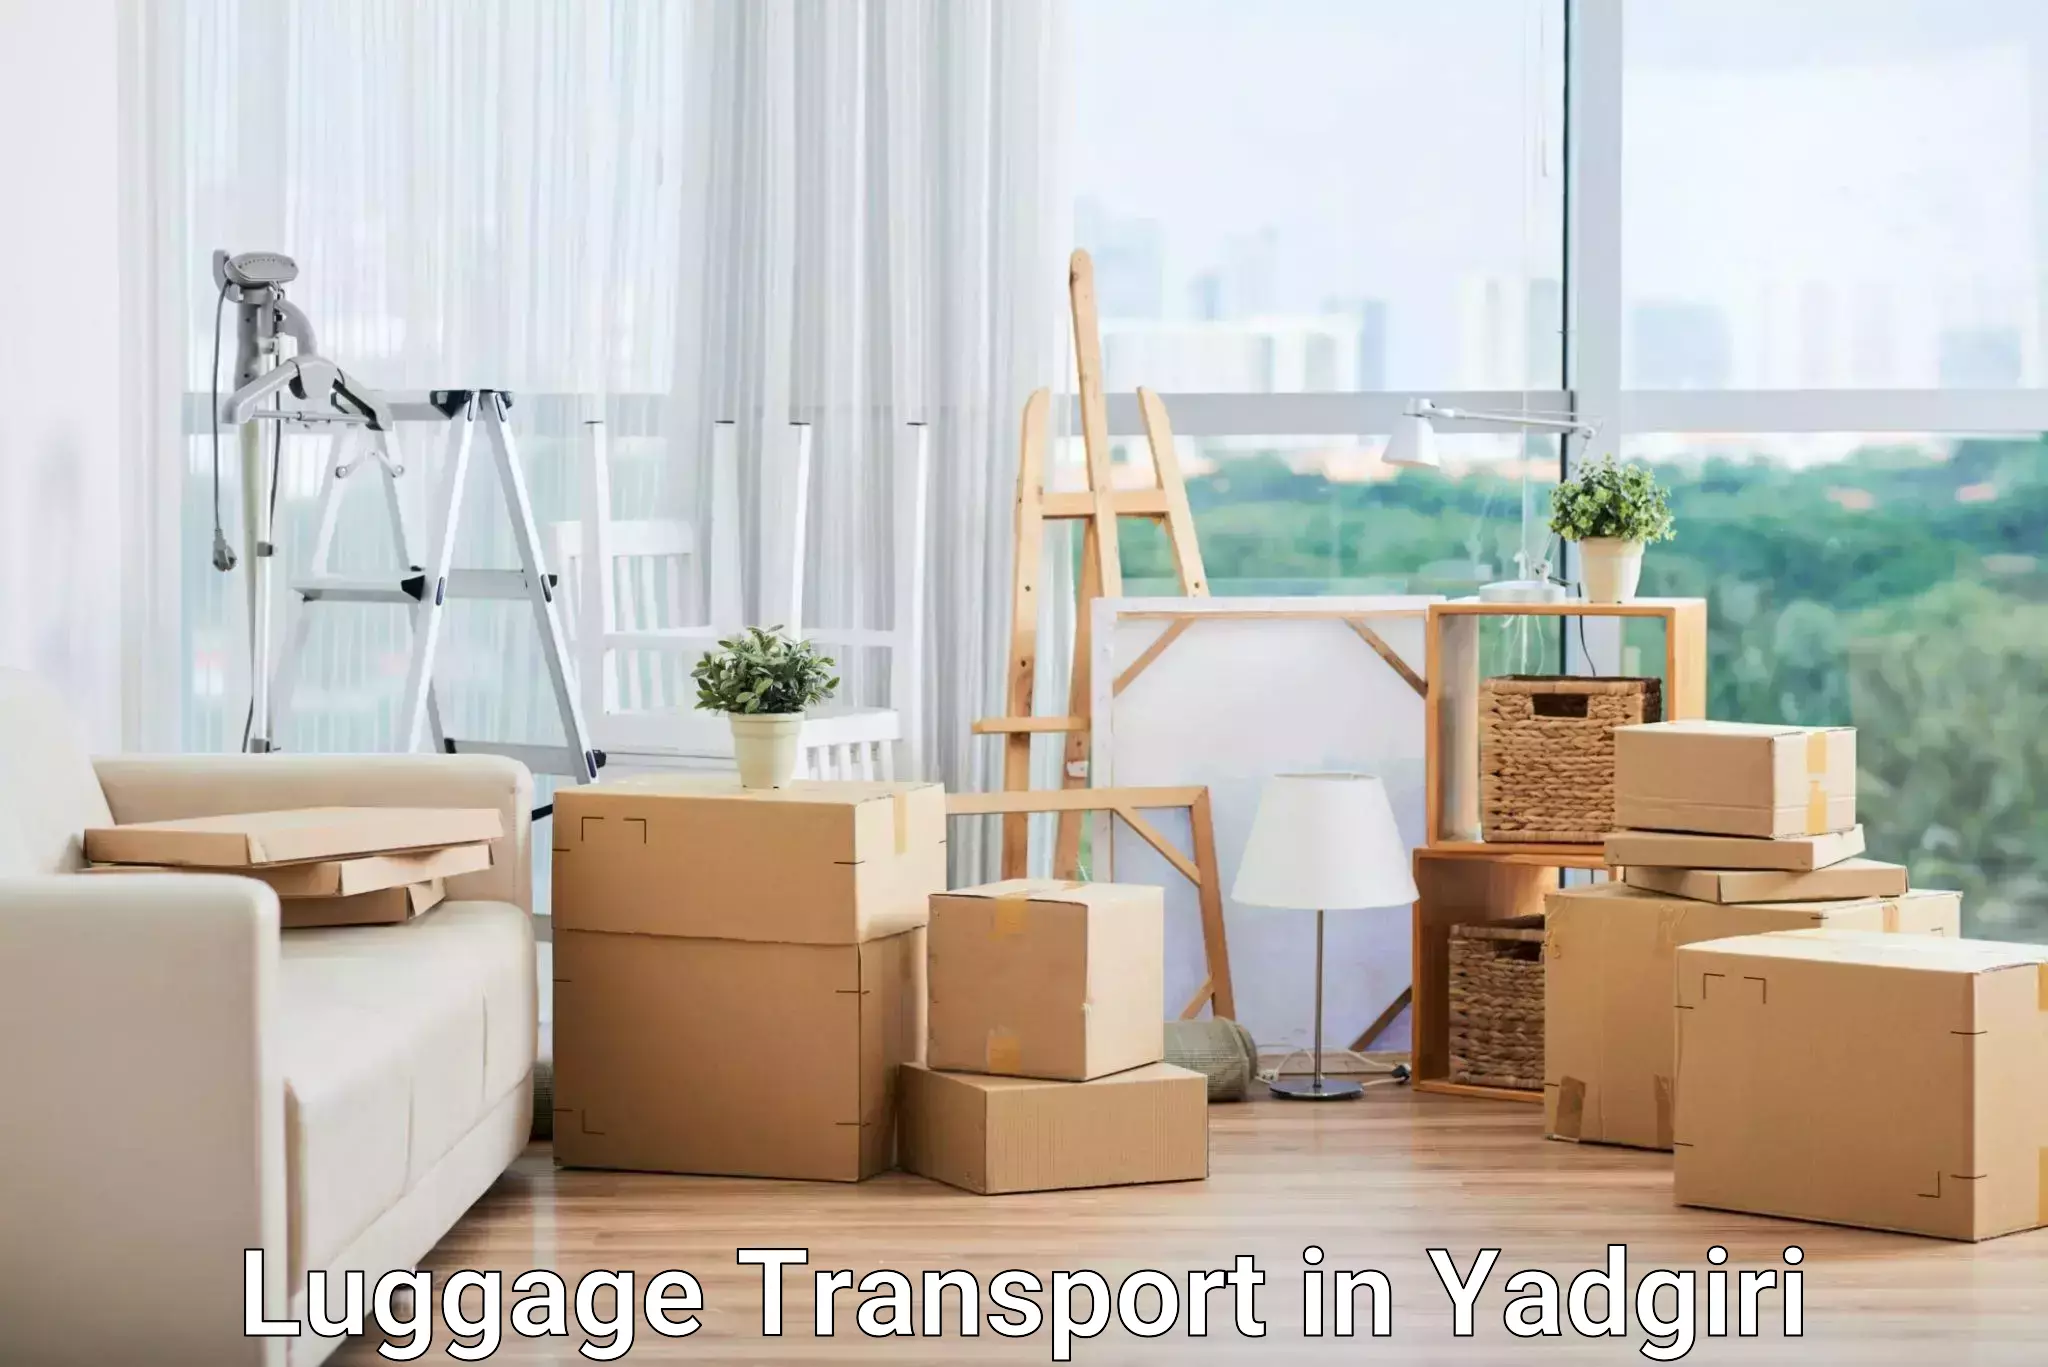 Luggage transport pricing in Yadgiri